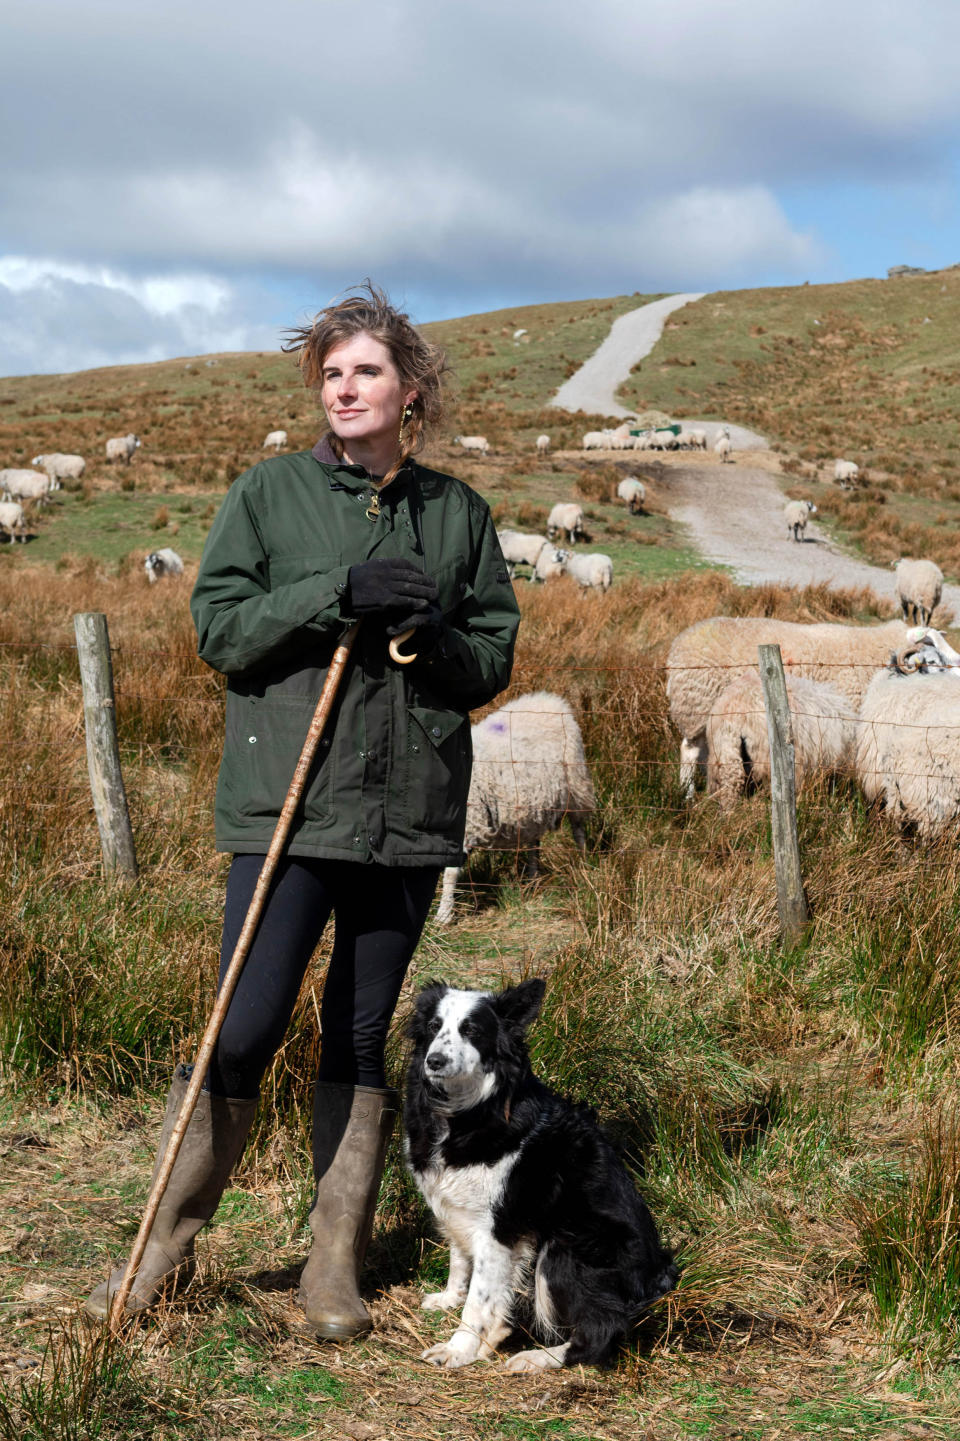 Yorkshire Shepherdess, Amanda Owen con su perro pastor en la granja